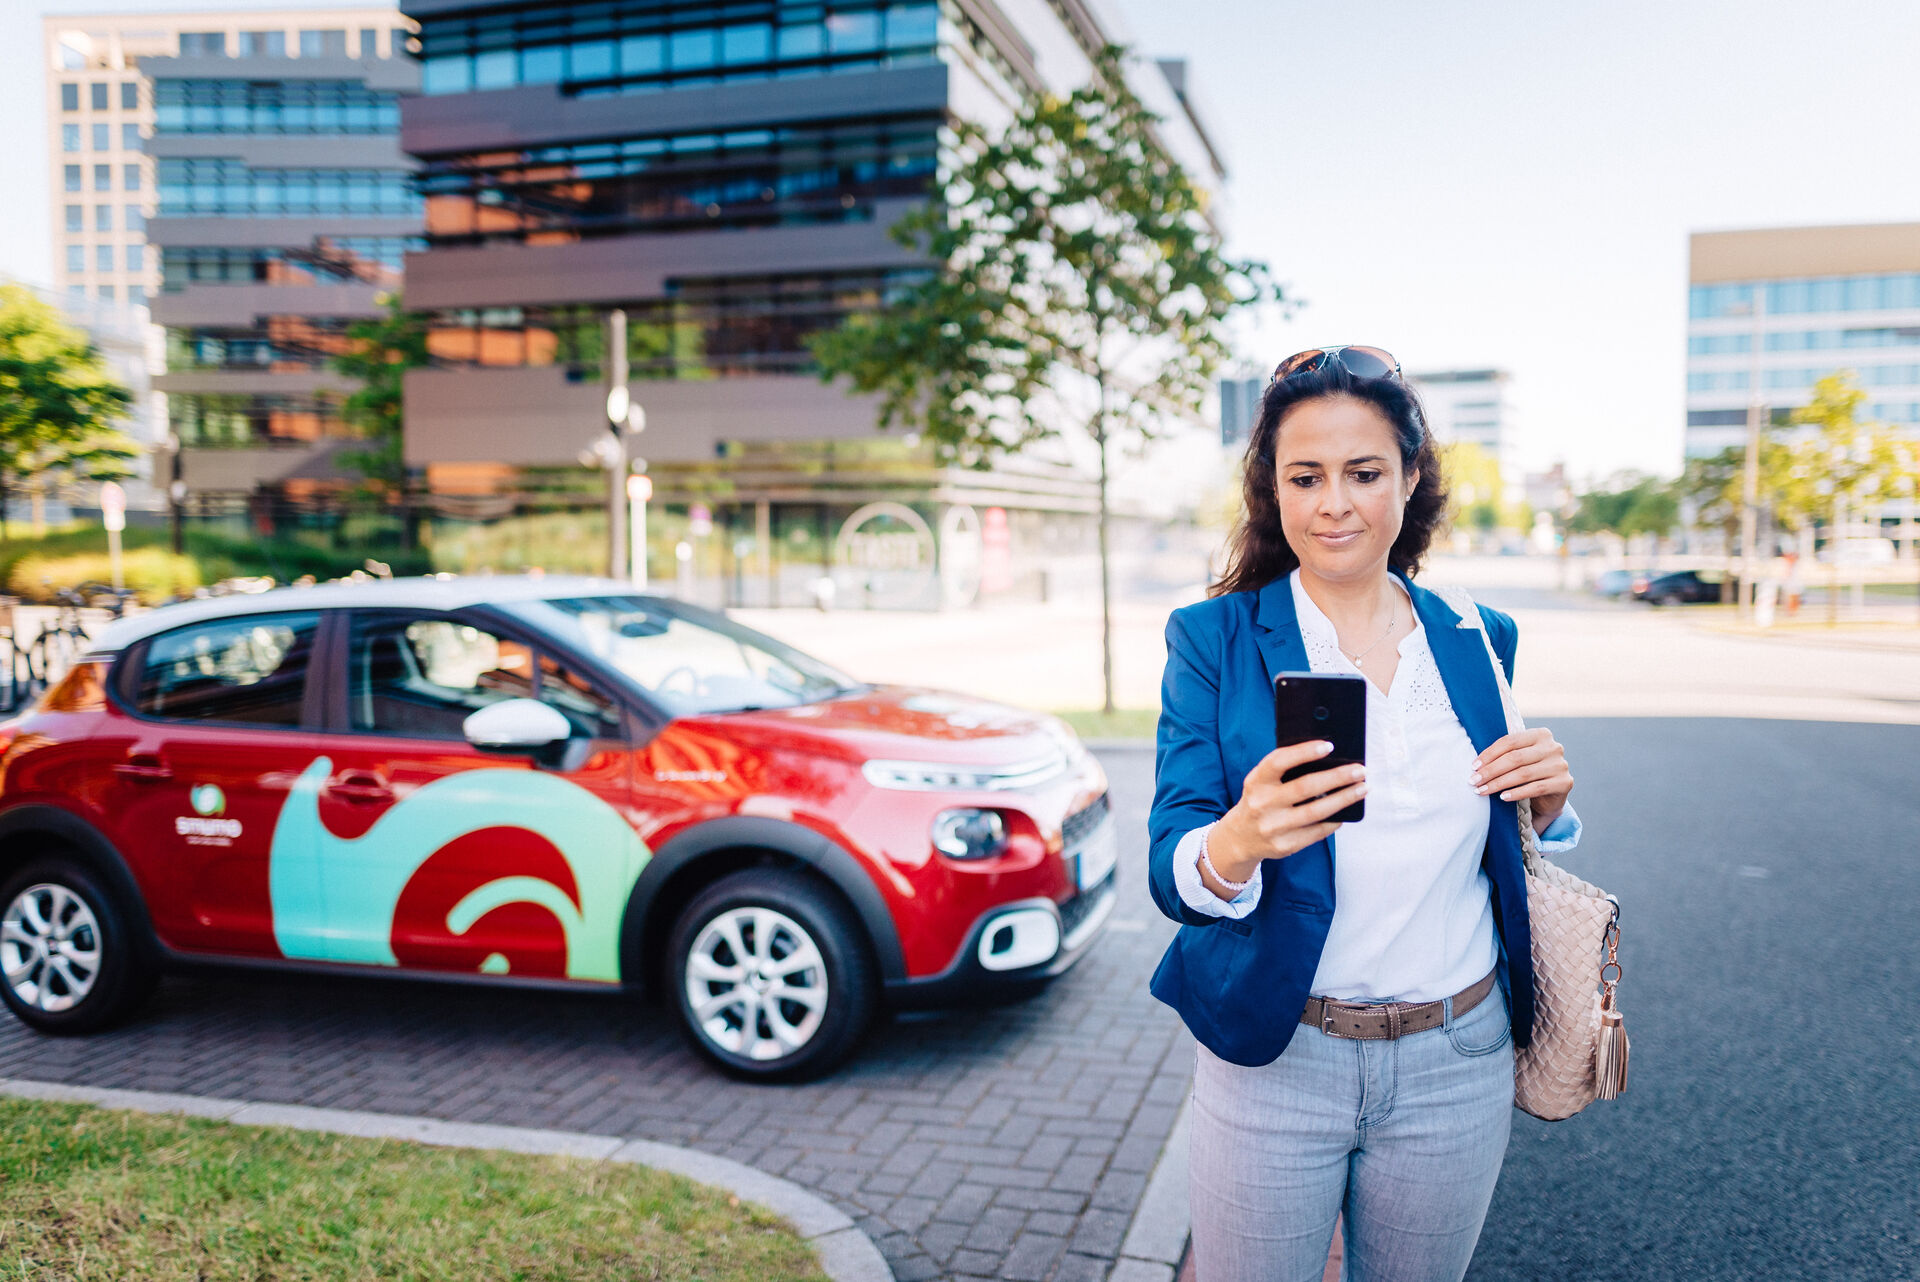 Im Vordergrund: Frau schaut auf Smartphone, im Hintergrund ein rotes smumo-Auto vor modernem Bürogebäude